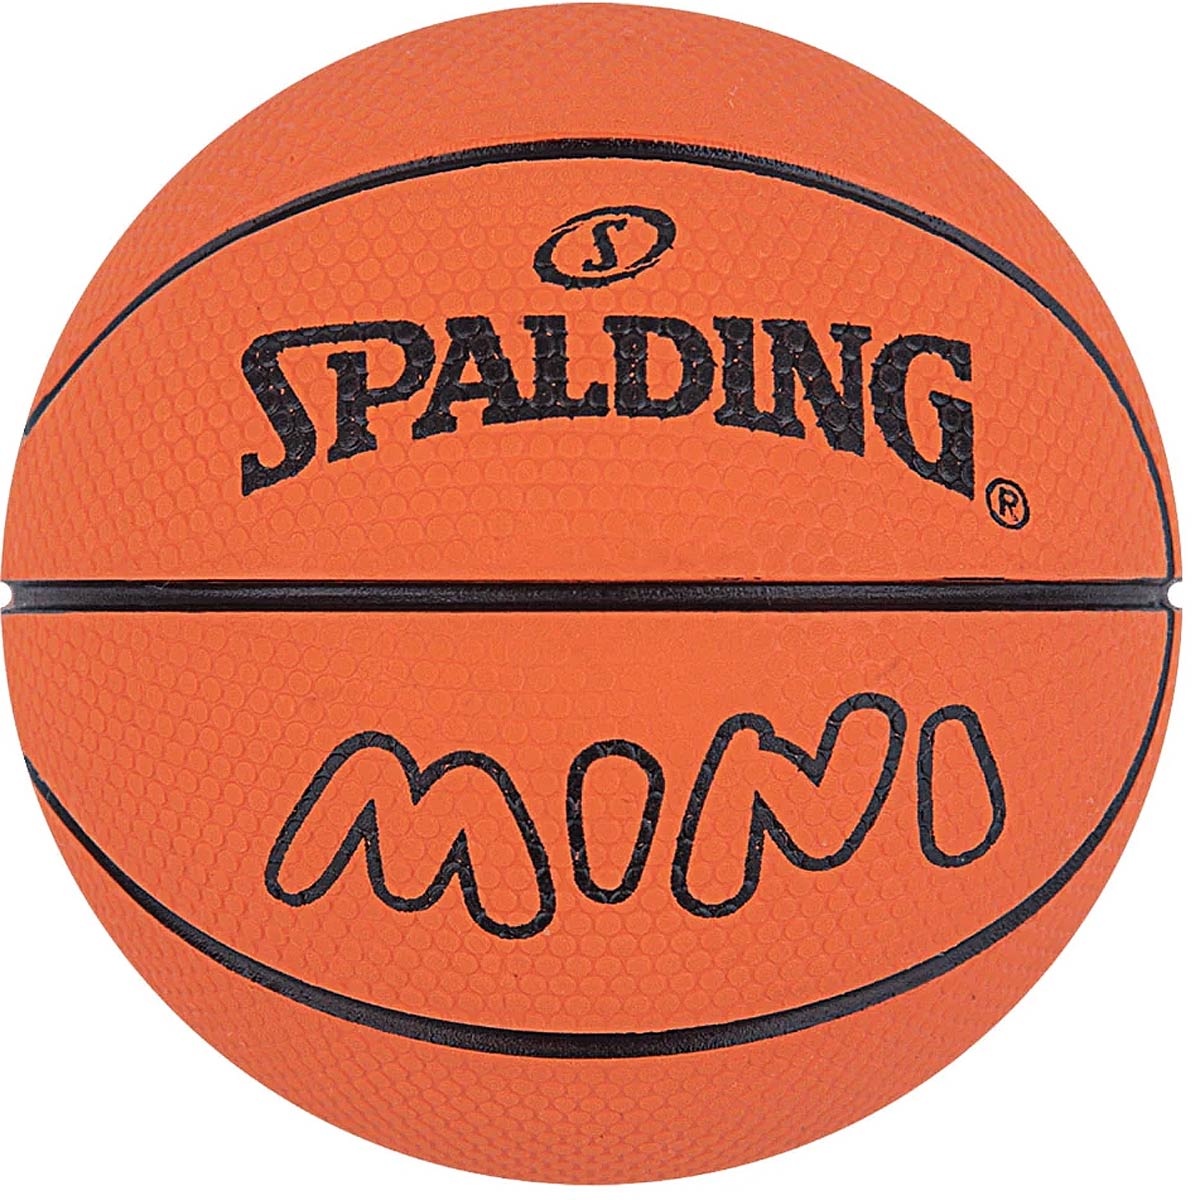 Image of Spalding Spaldeens Basketball, Orange